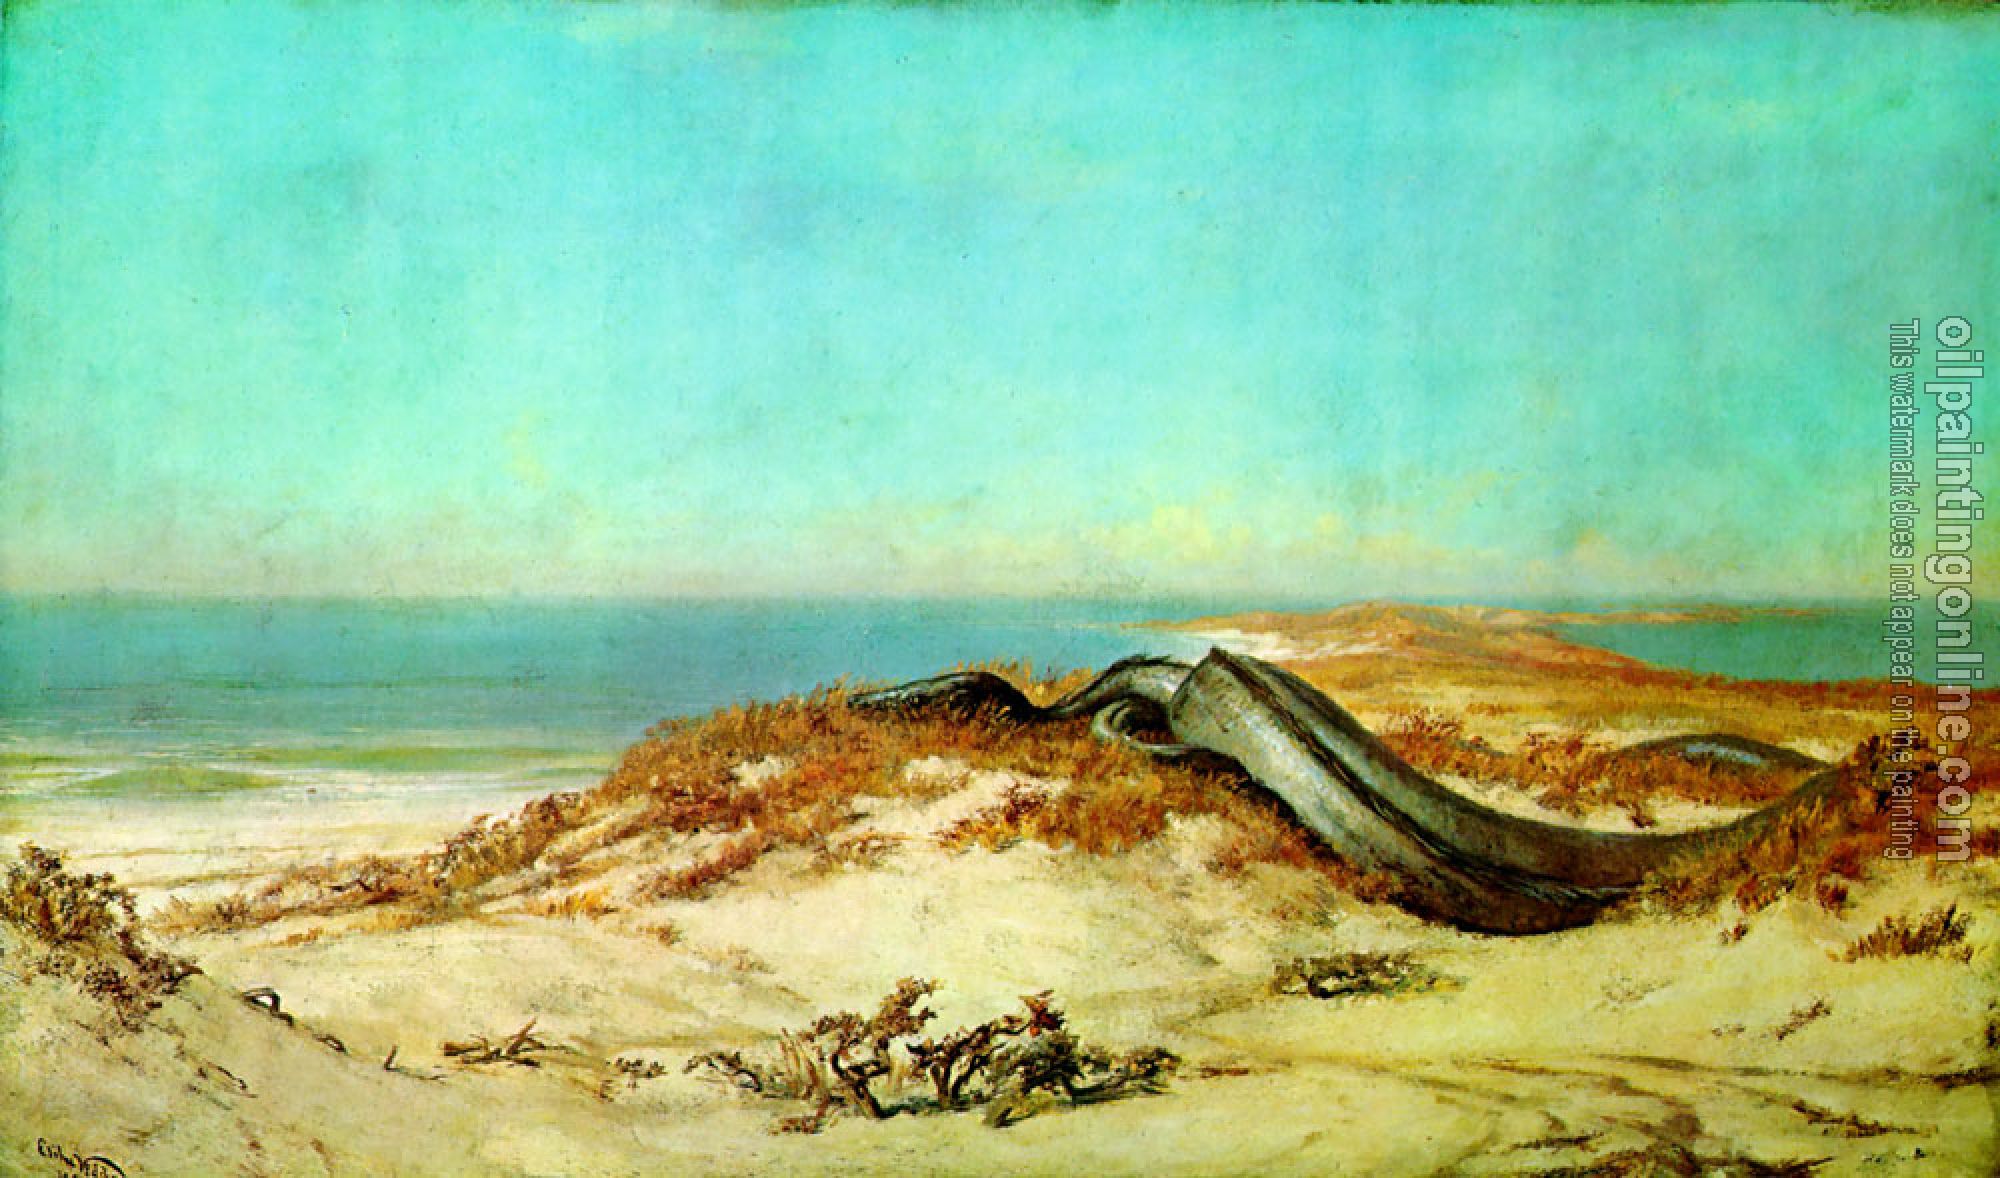 Vedder, Elihu - Lair of the Sea Serpent